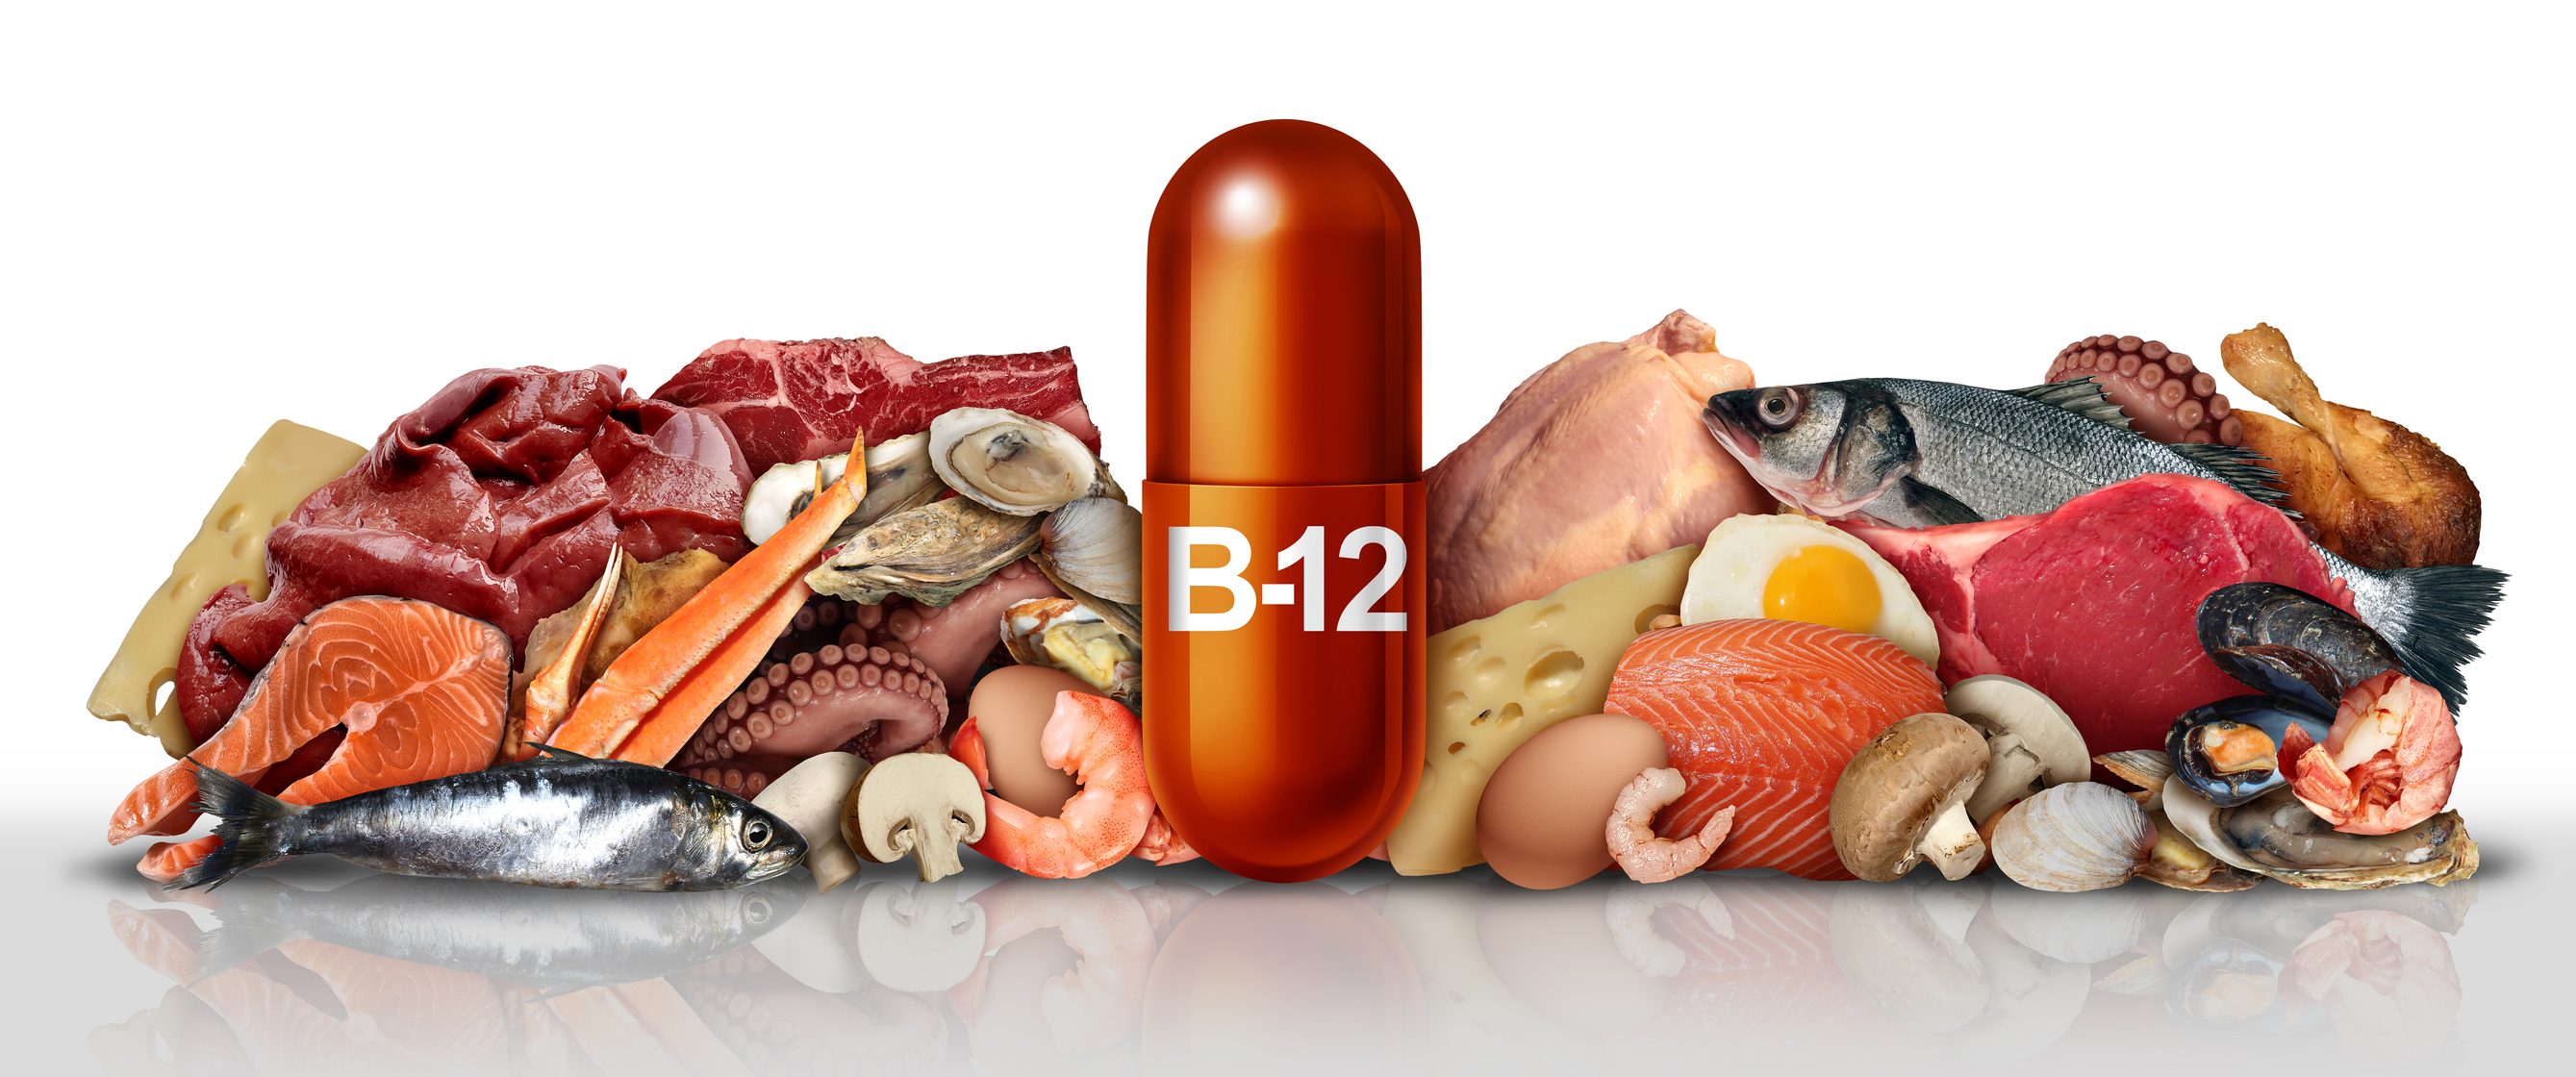 Produkty obsahující vitamin B12